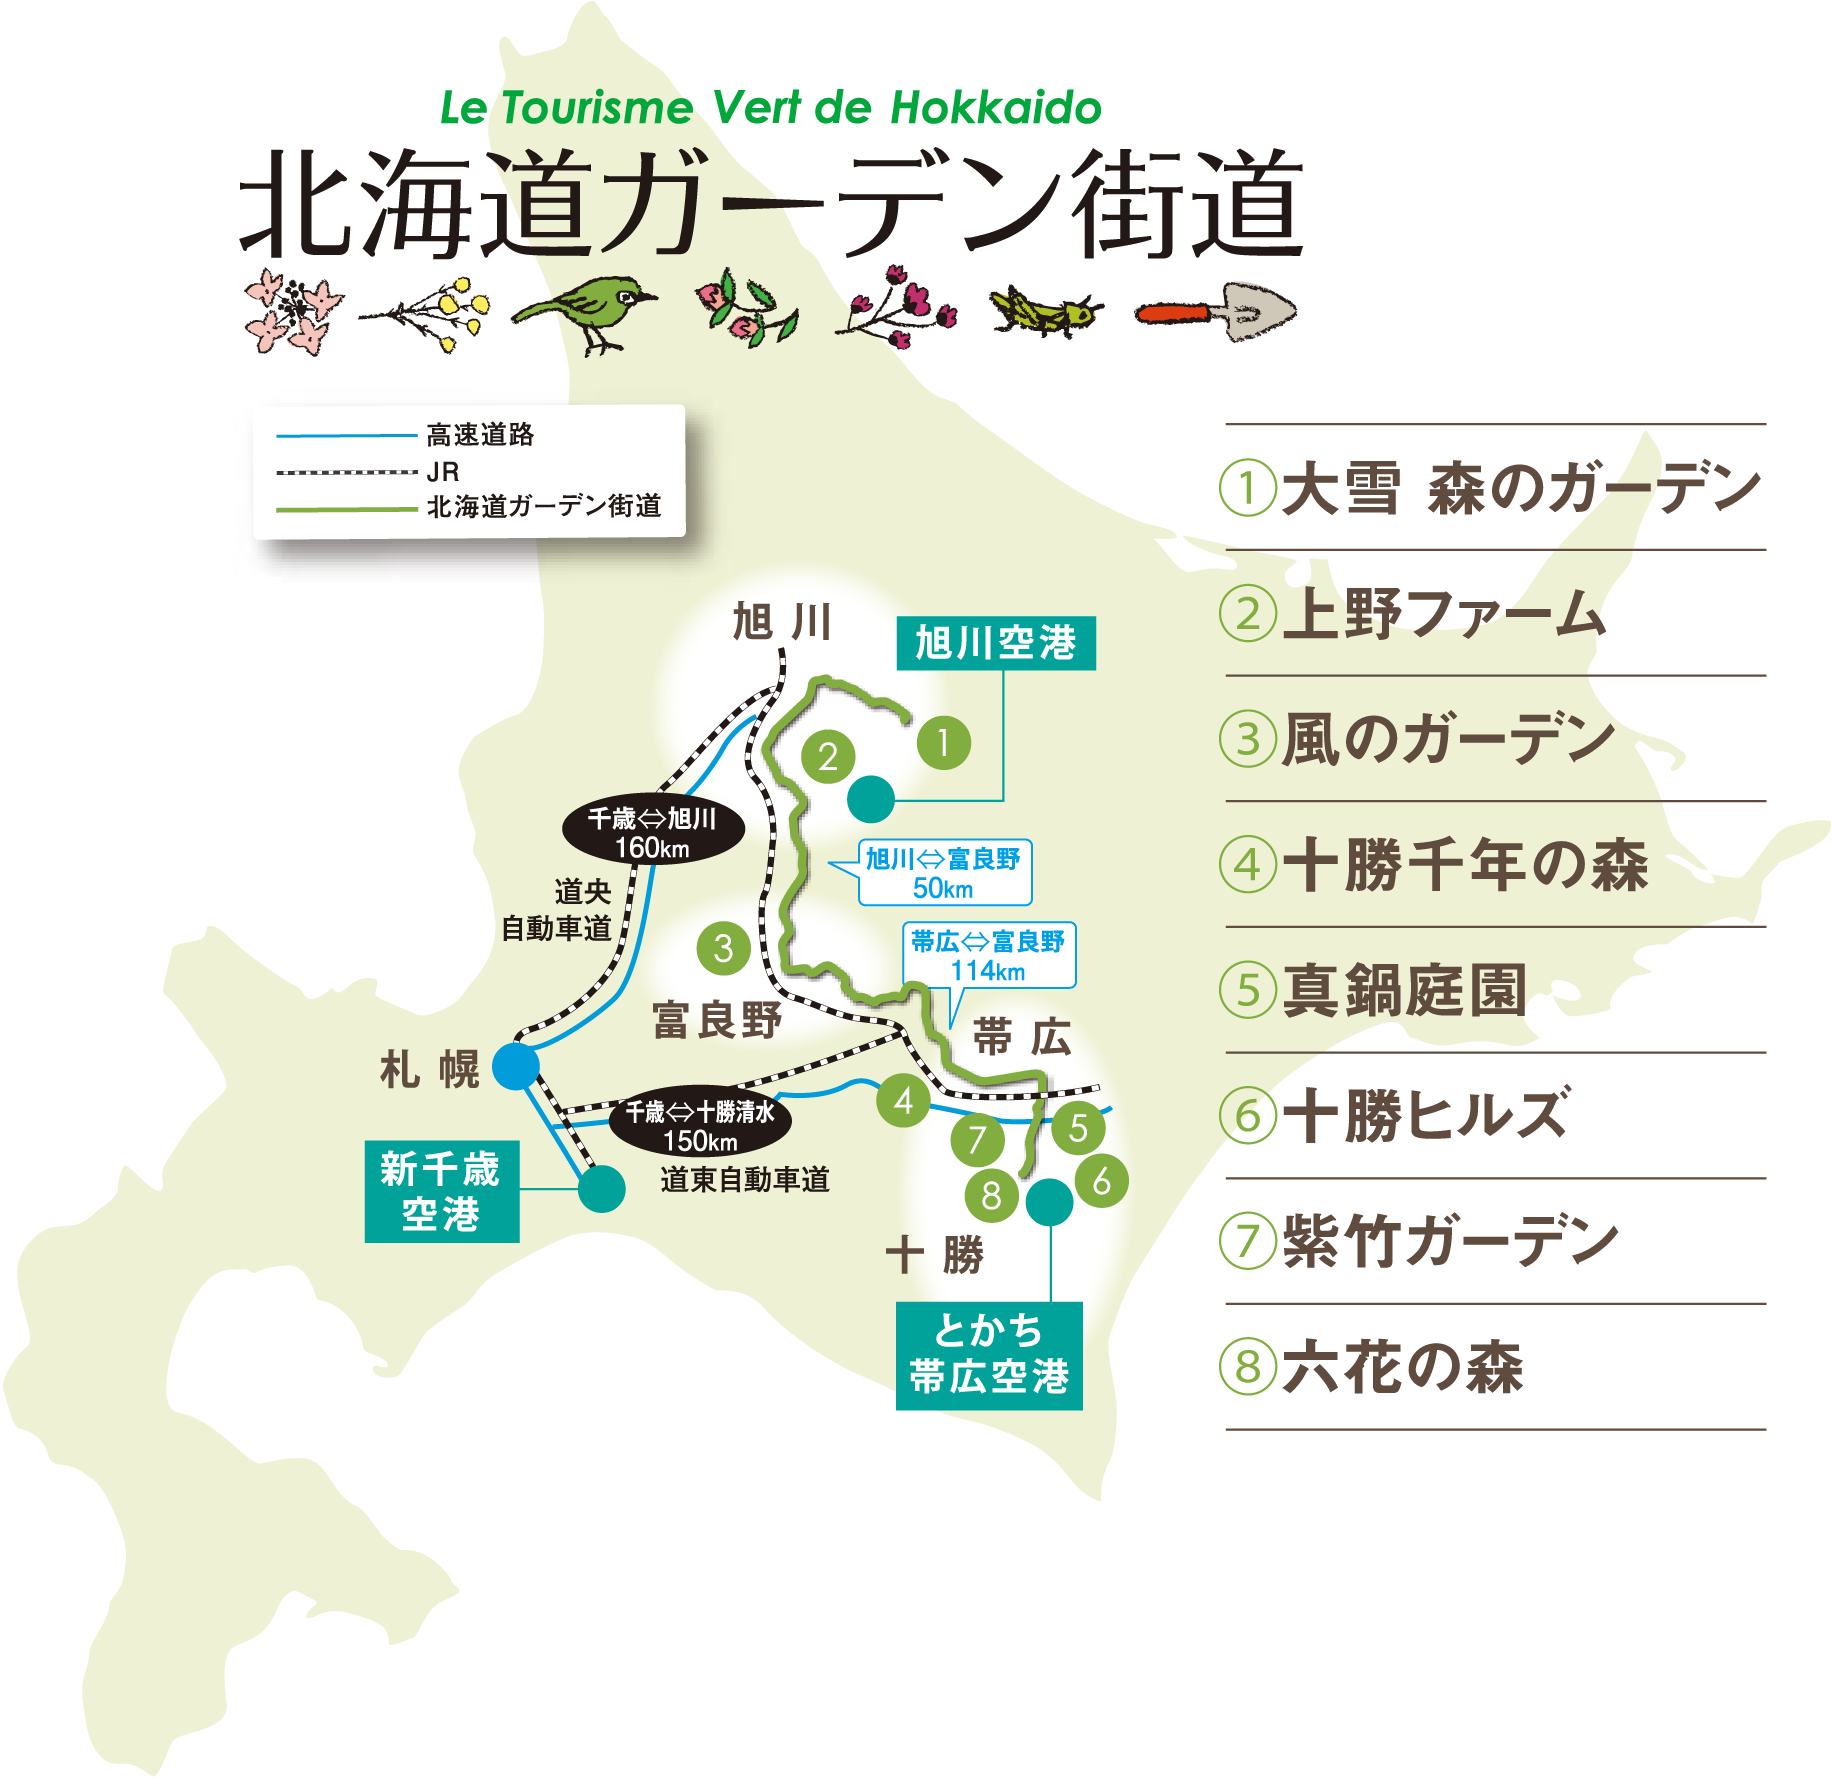 北海道 Japan Garden Tourism ジャパンガーデンツーリズム